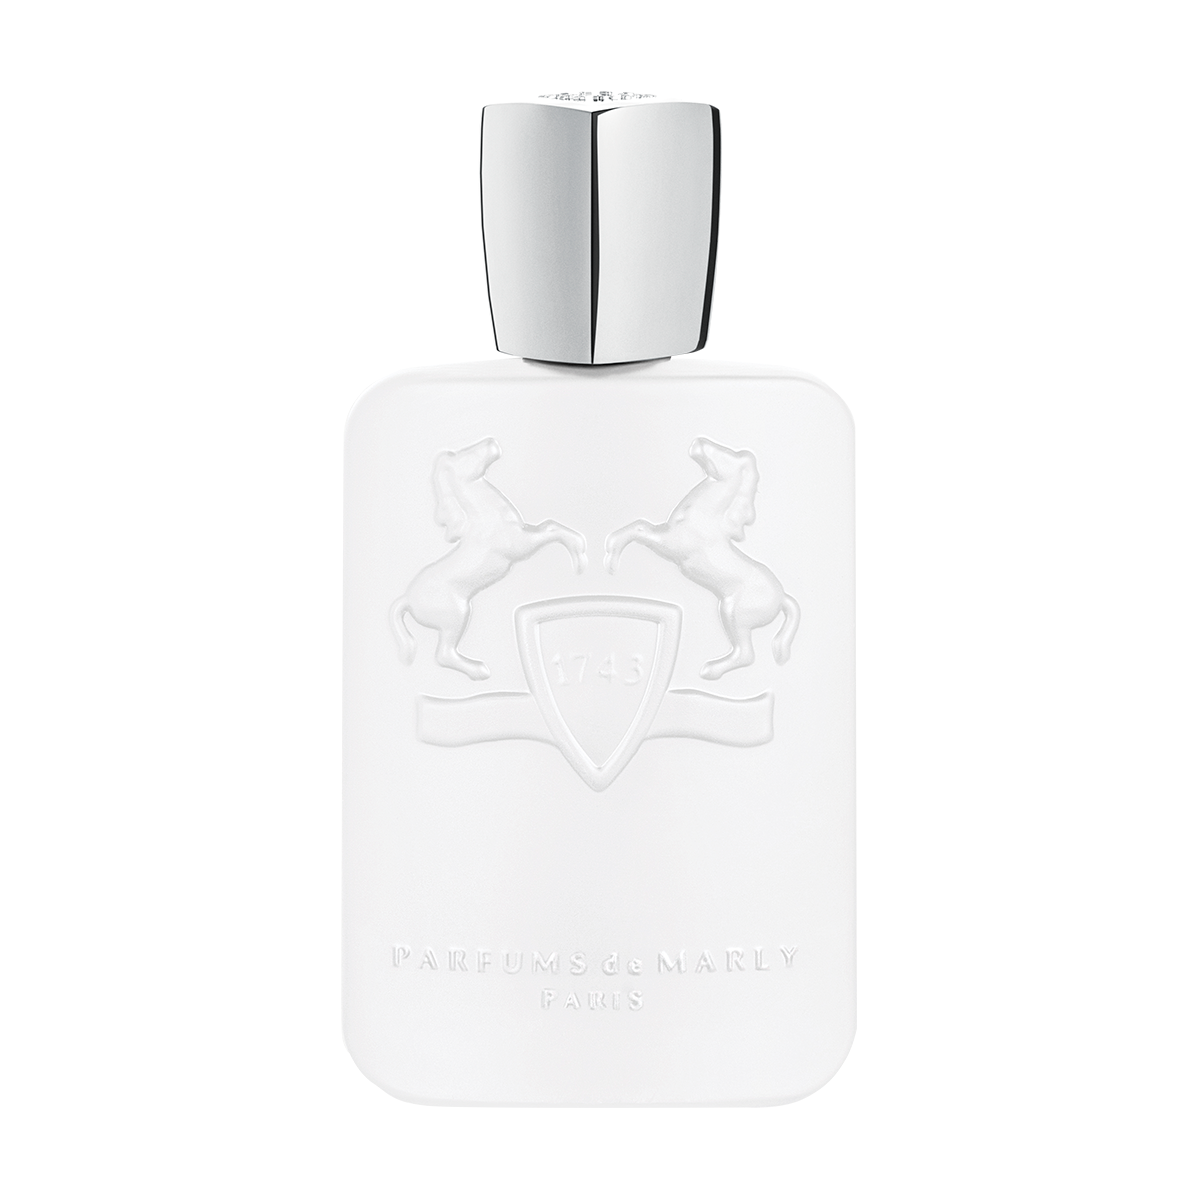 Galloway - Parfums De Marly - EDP 125ml